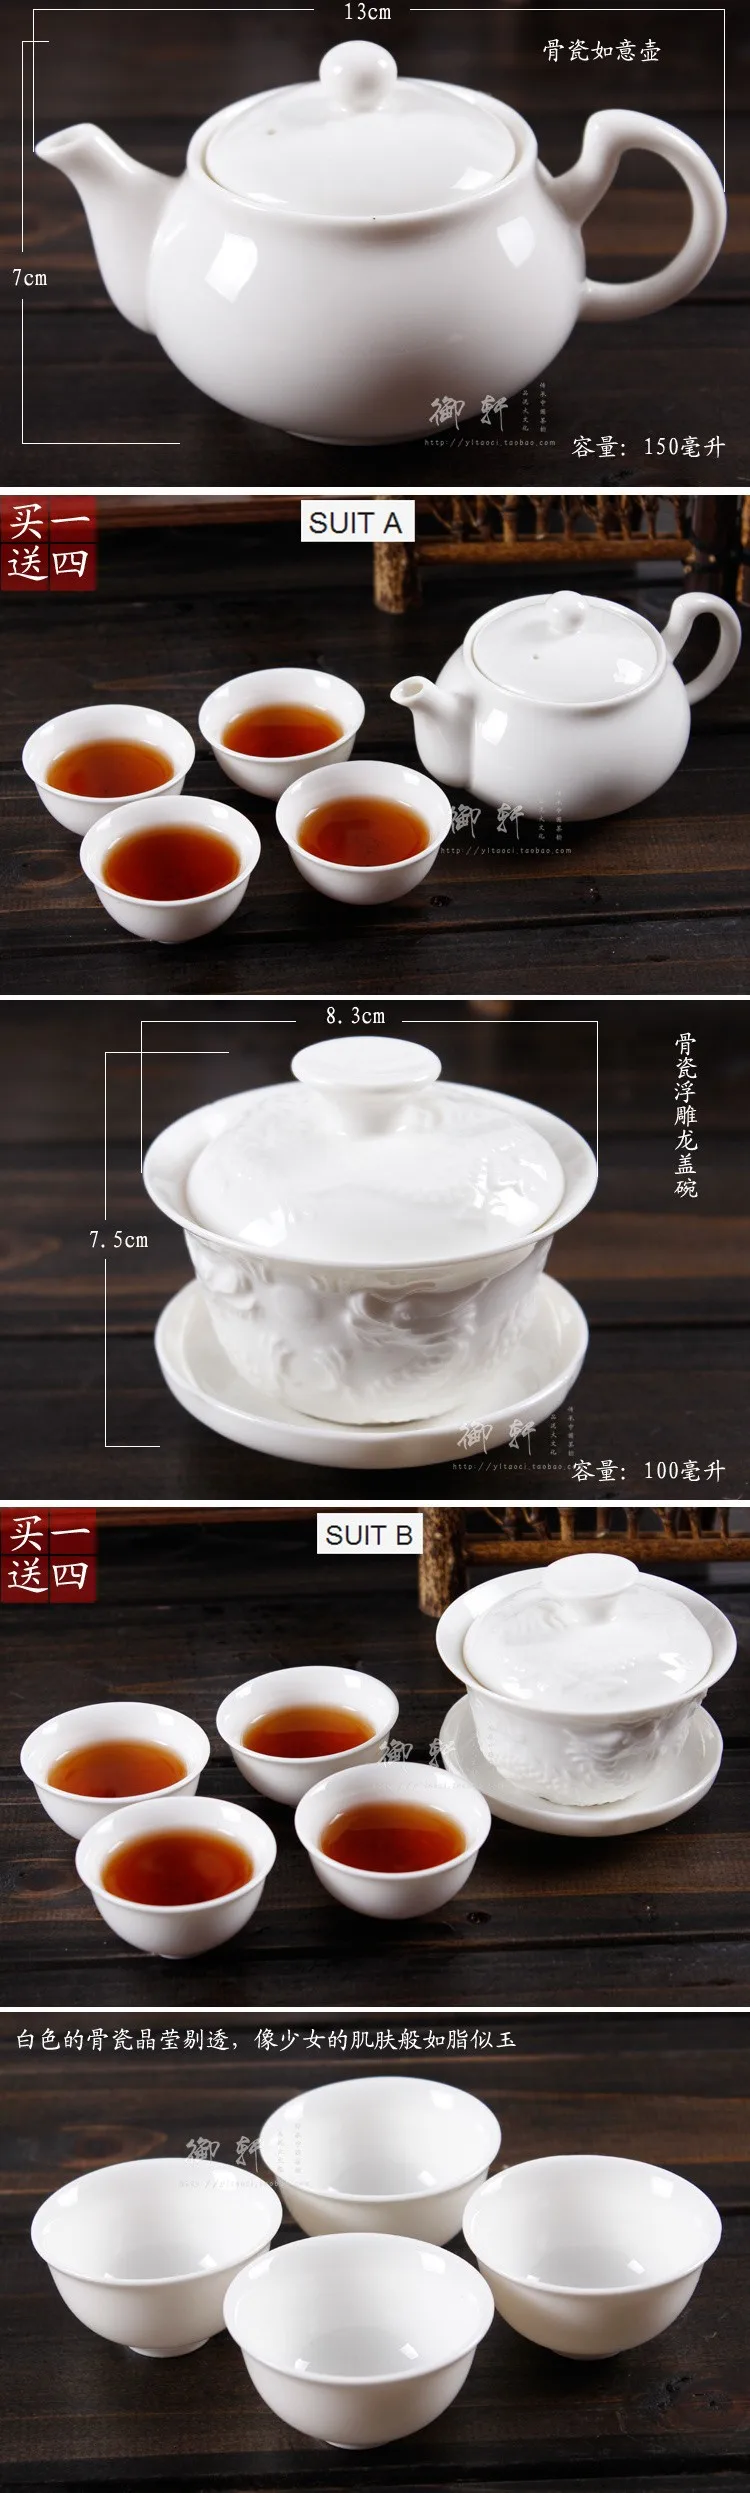 Лидер продаж Gaiwan чай горшок Китай 5 шт.(1 чай горшок+ 4 чашки) чайник Исин Кунг фу набор ручной работы керамика фарфор